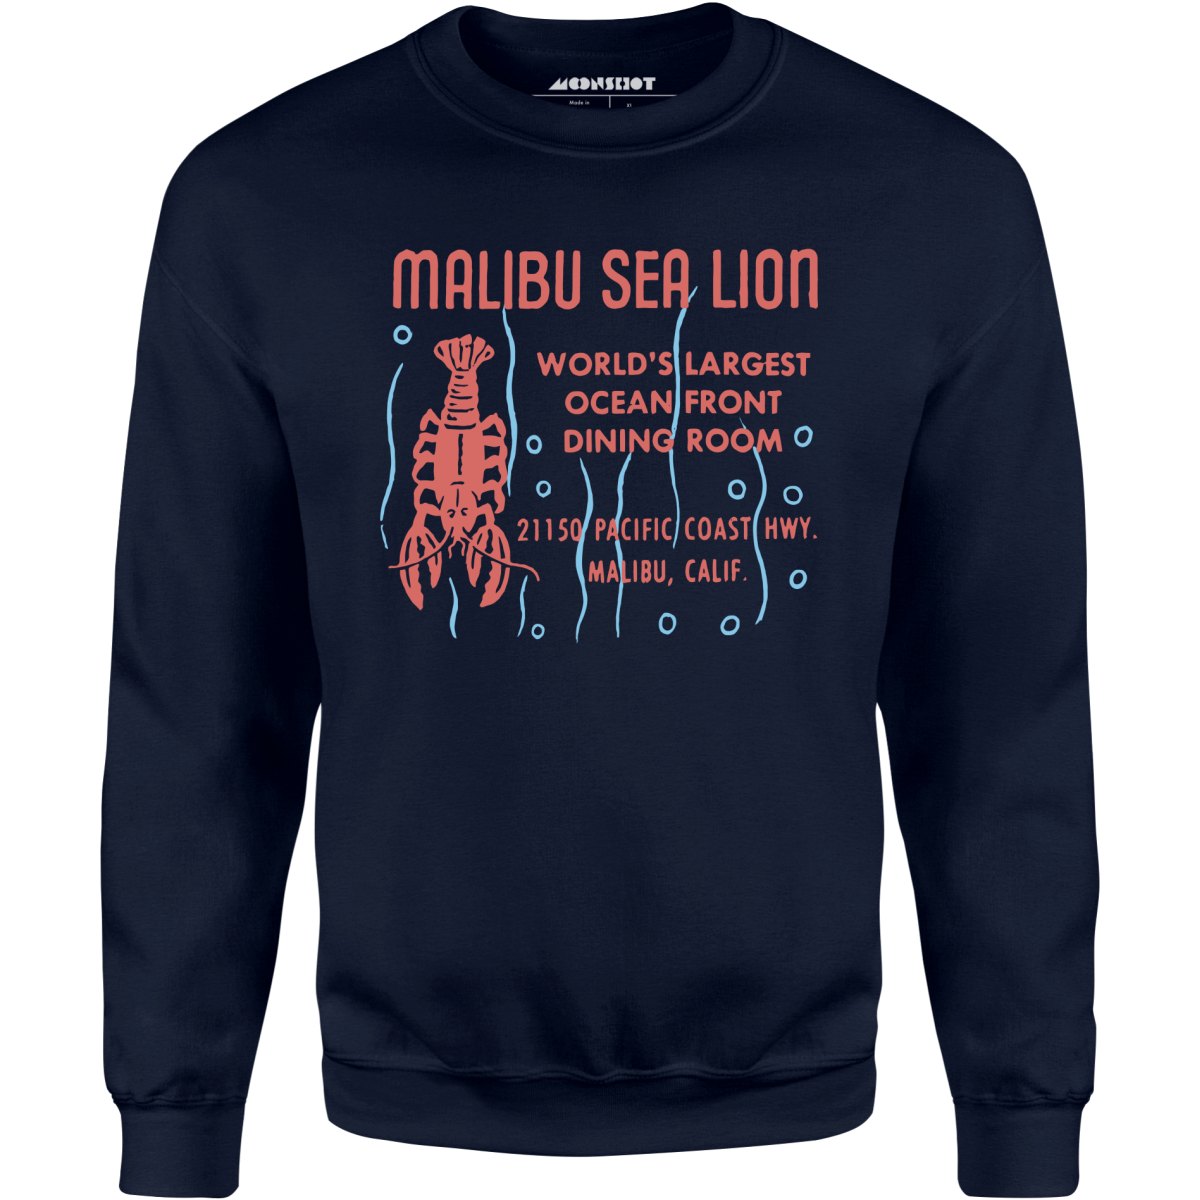 Malibu Sea Lion - Malibu, CA - Vintage Restaurant - Unisex Sweatshirt